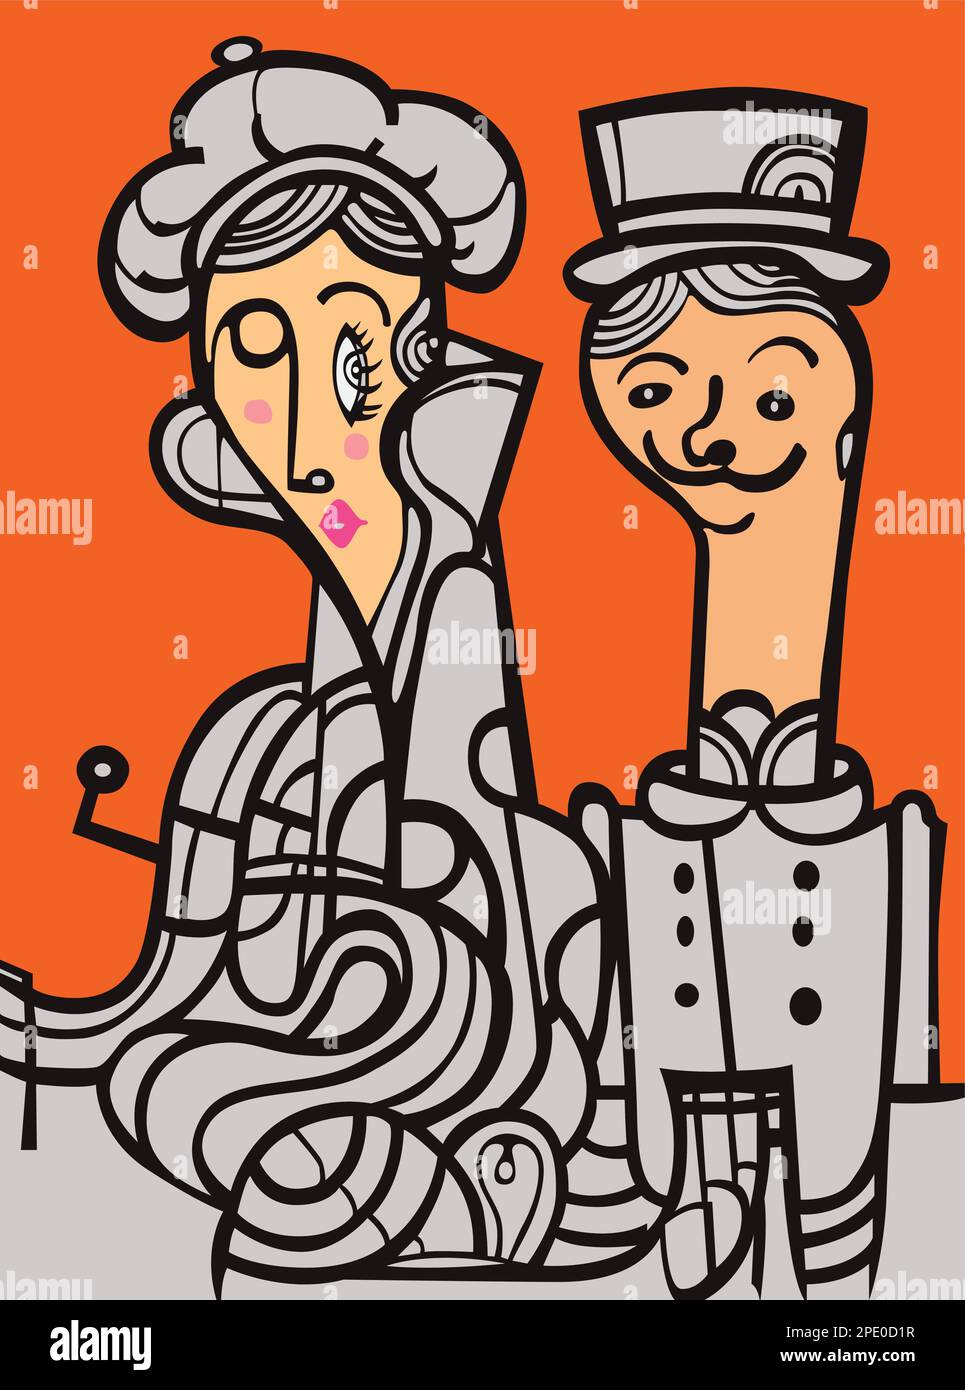 Illustration de l'anglais britannique européen mi-âge stylisé couple heureux homme et femme en costumes rétro vintage avec des chapeaux sur l'art mural de couleur orange Illustration de Vecteur